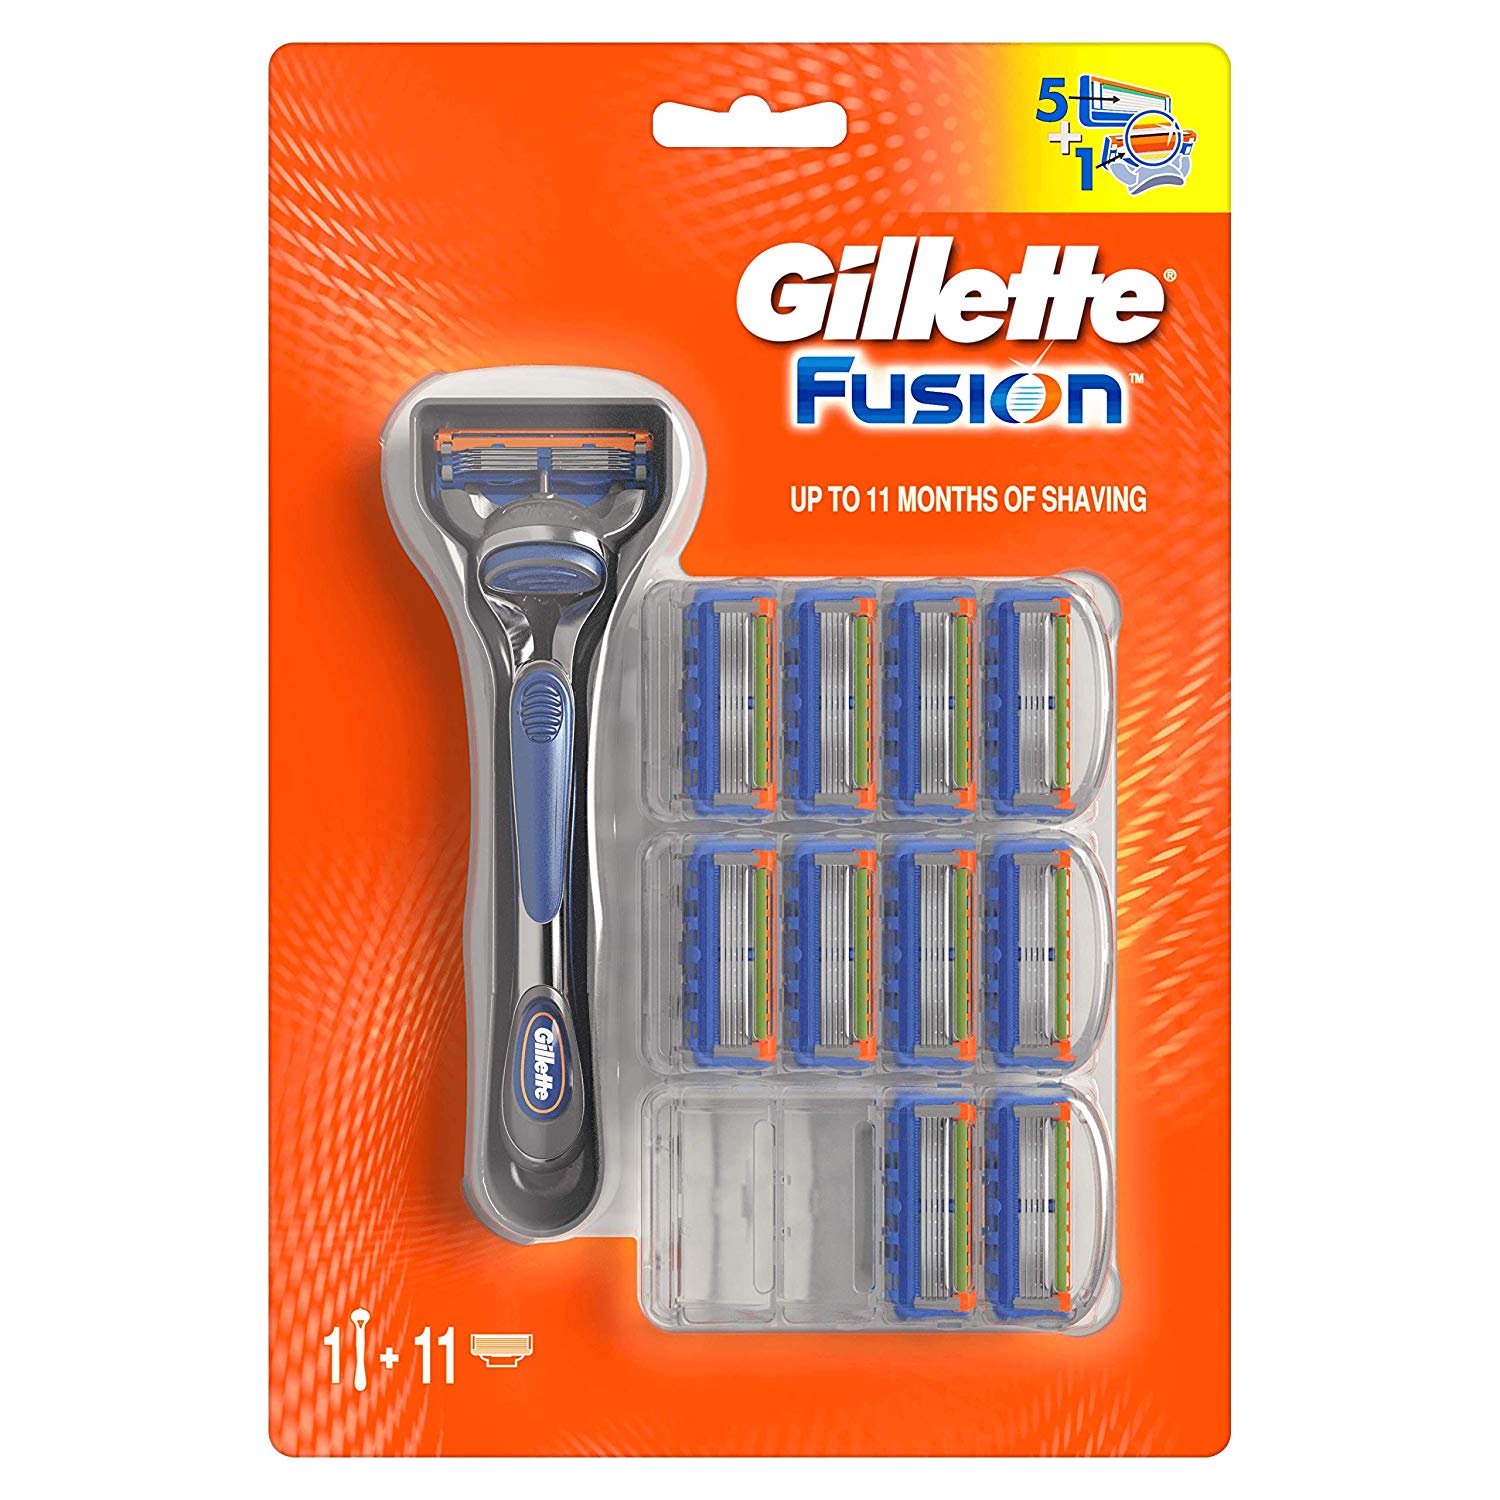 Cuchilla Gillette Fusion + 11 recambios solo 29,9€